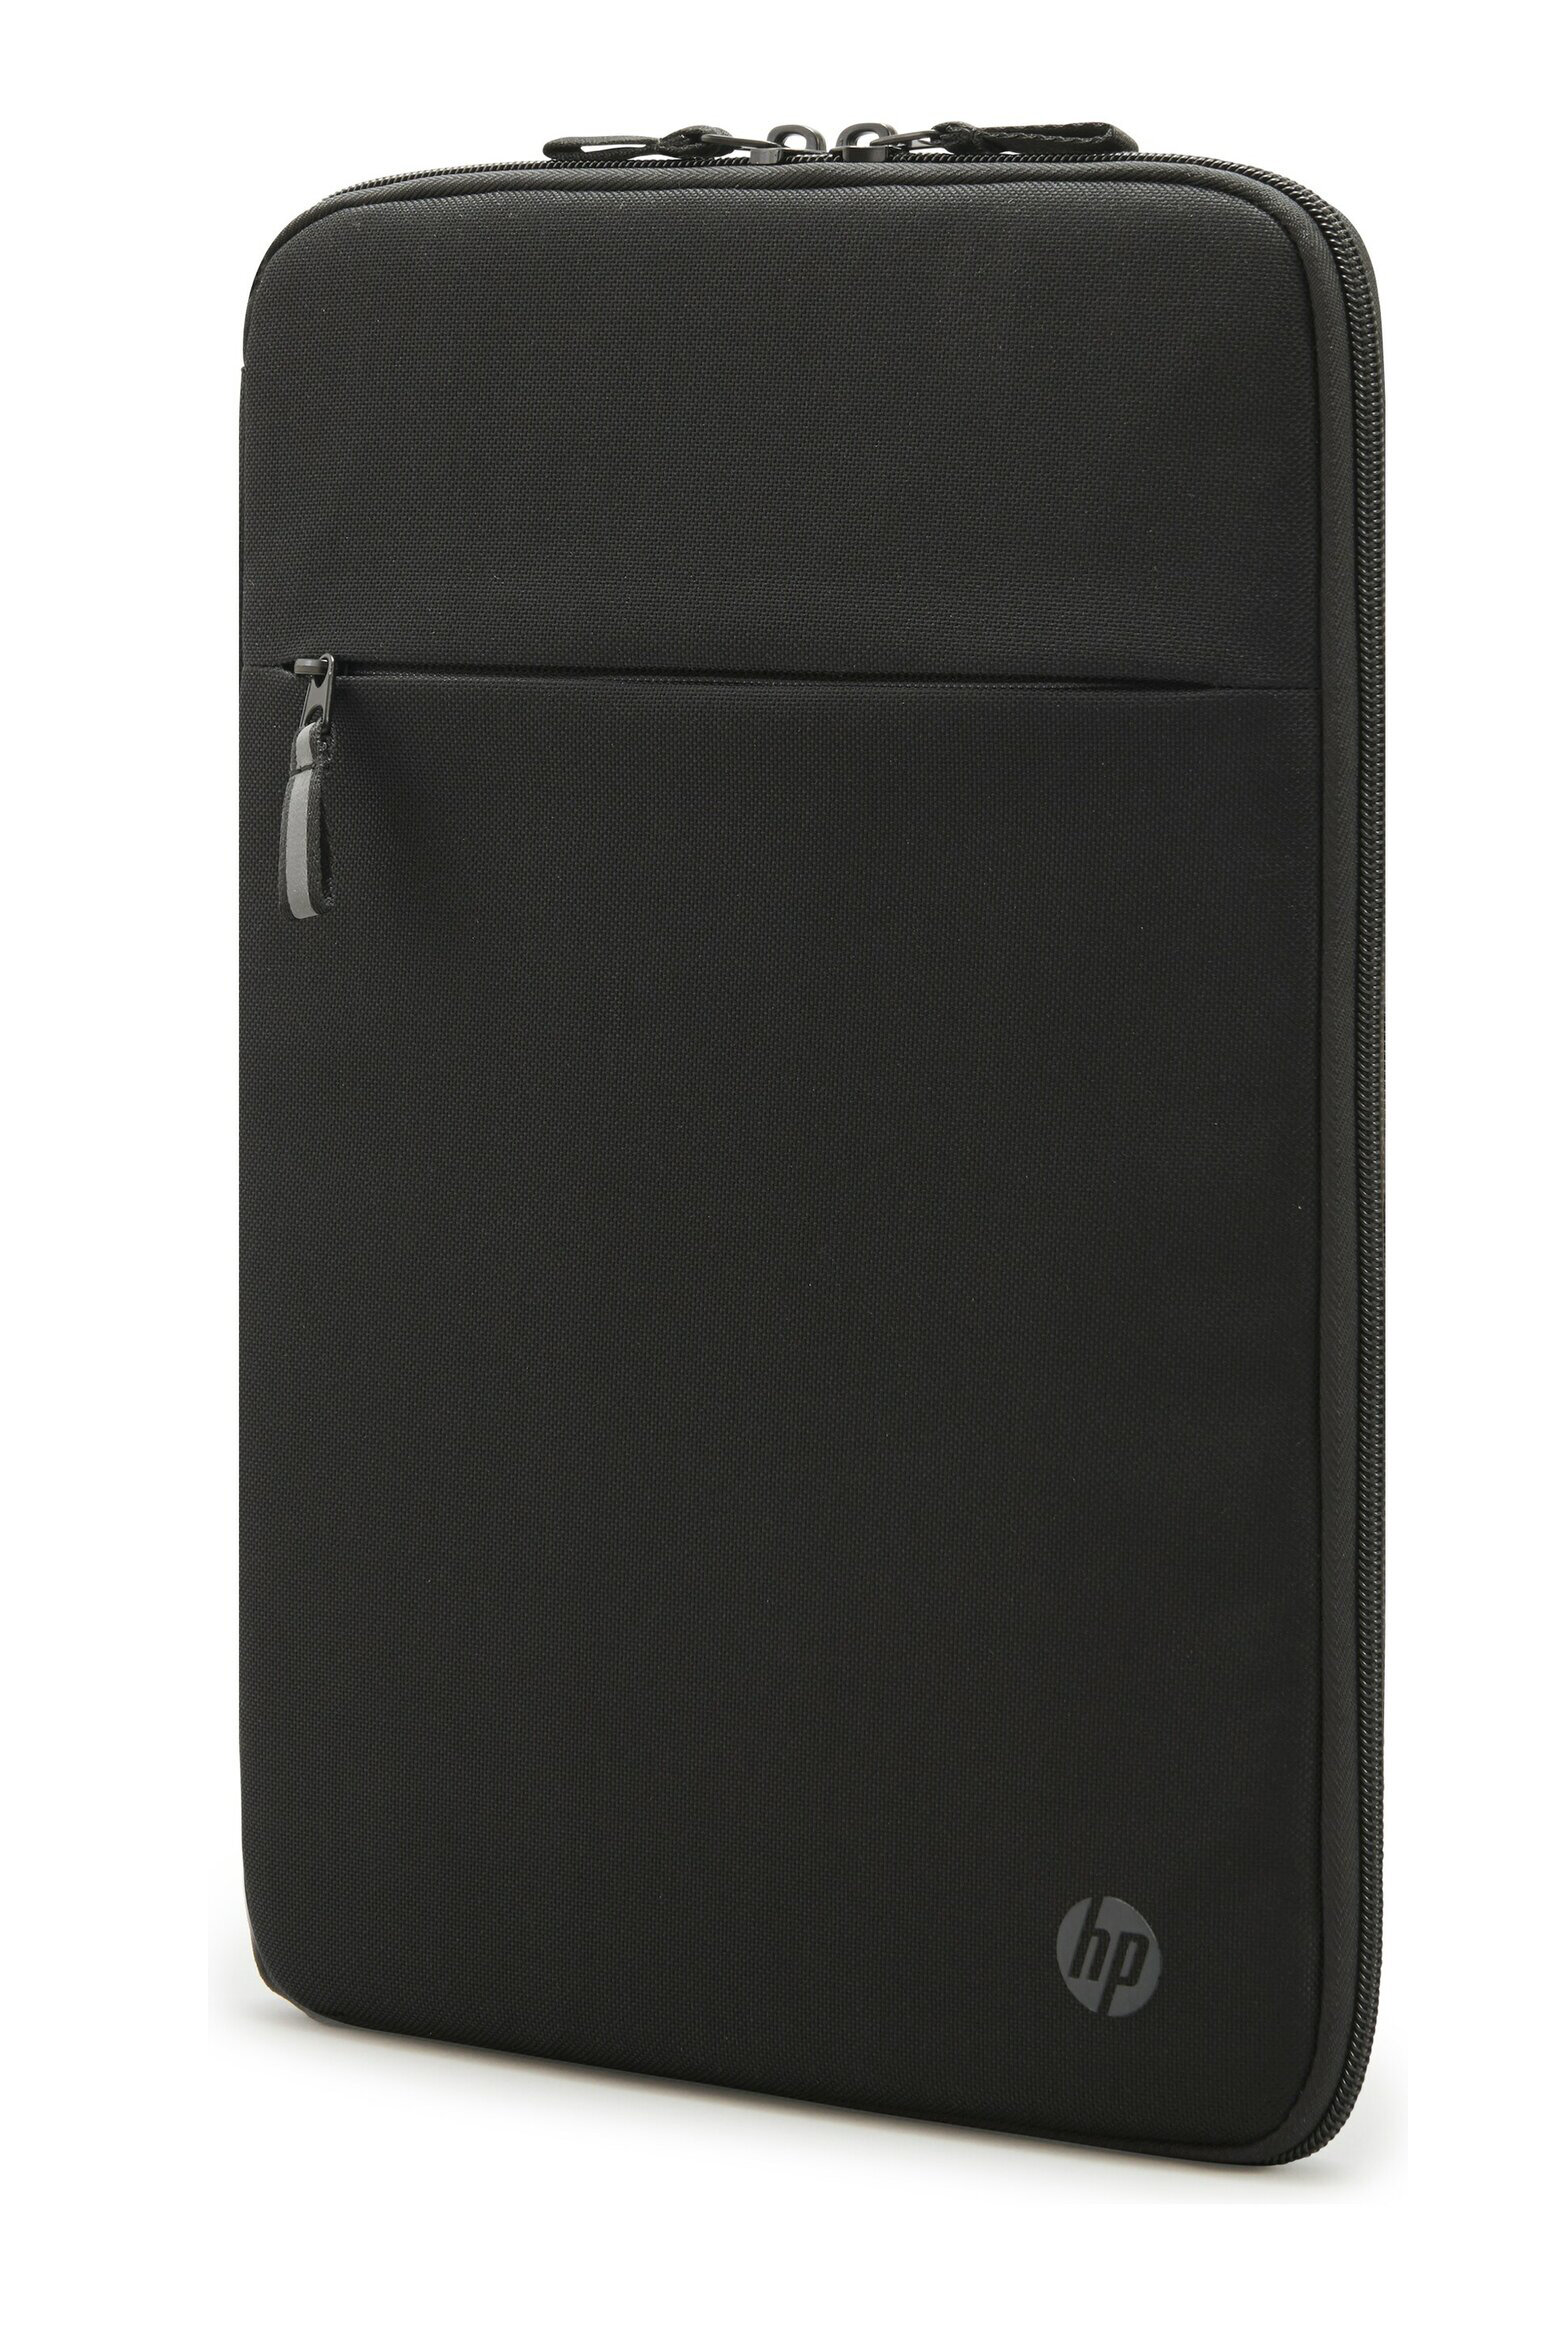 Защитный чехол для ноутбука 141" дюймов HP Renew Business Laptop Sleeve 3E2U7AA c защищенныv карманом для банковских карт черный